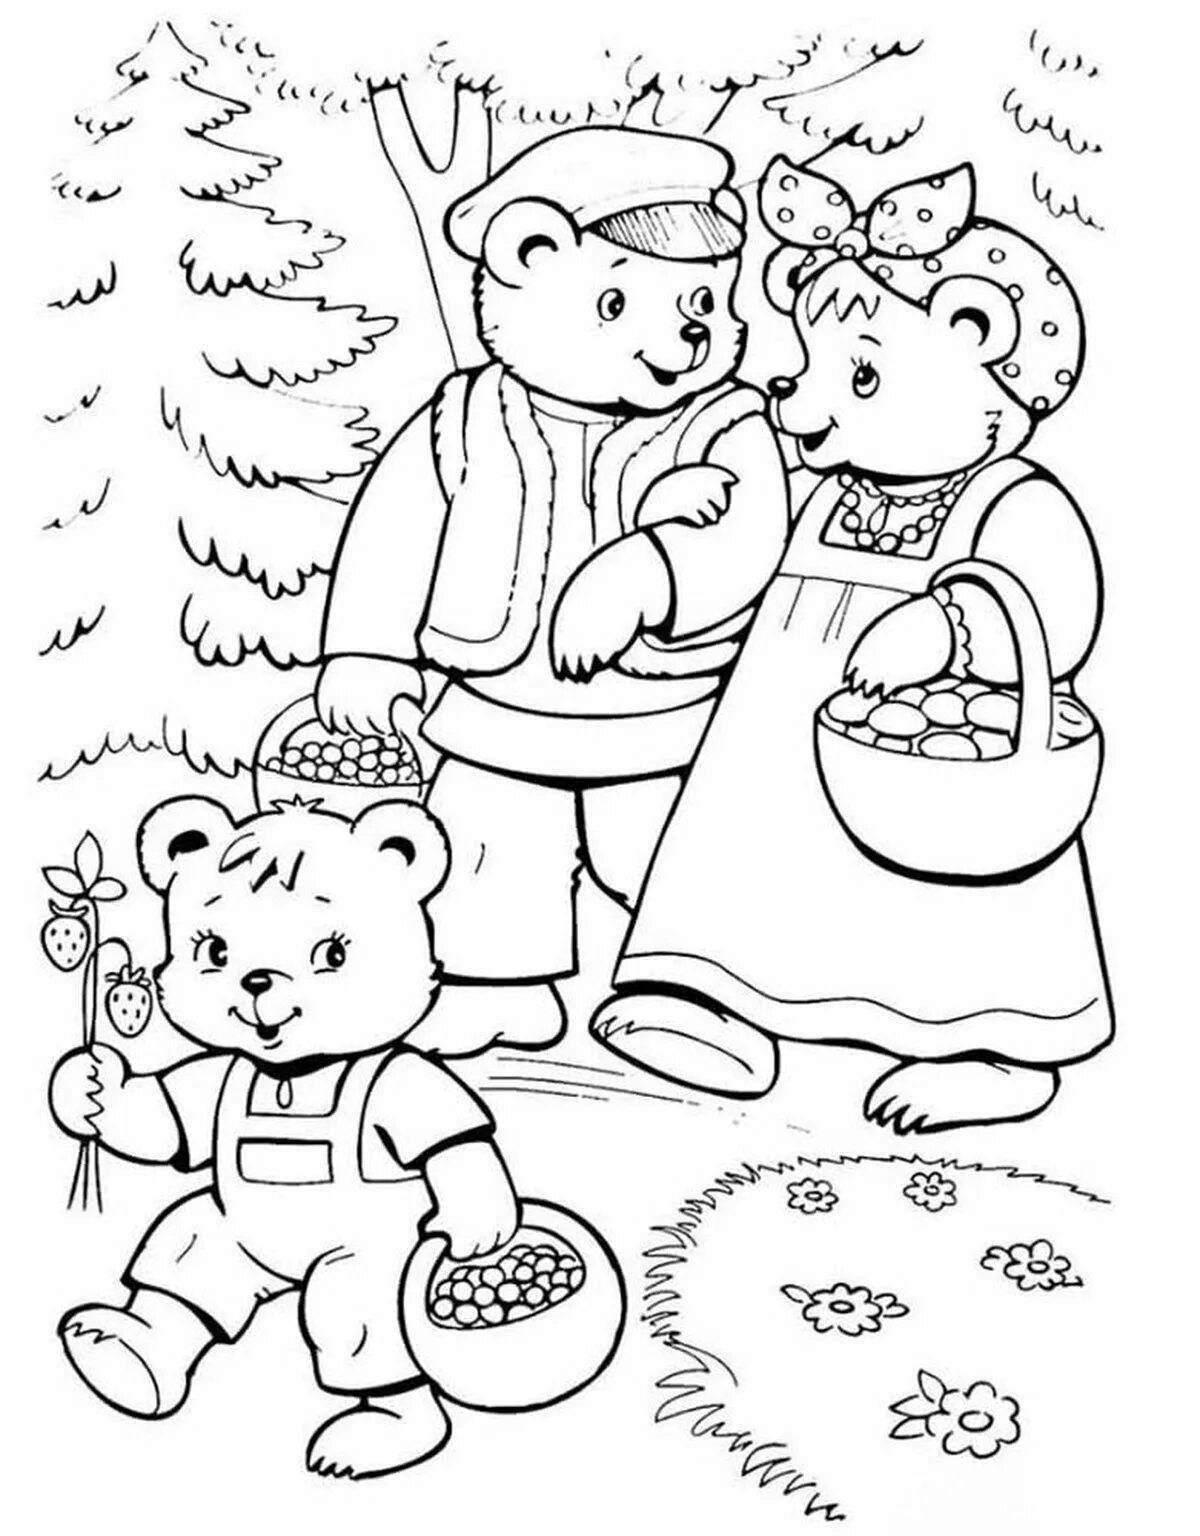 Картинки из сказок раскраски. Маша и три медведя сказка раскраска. Раскраска. Три медведя. Три медведя раскраска для детей. Раскраска к сказке три медведя для детей.